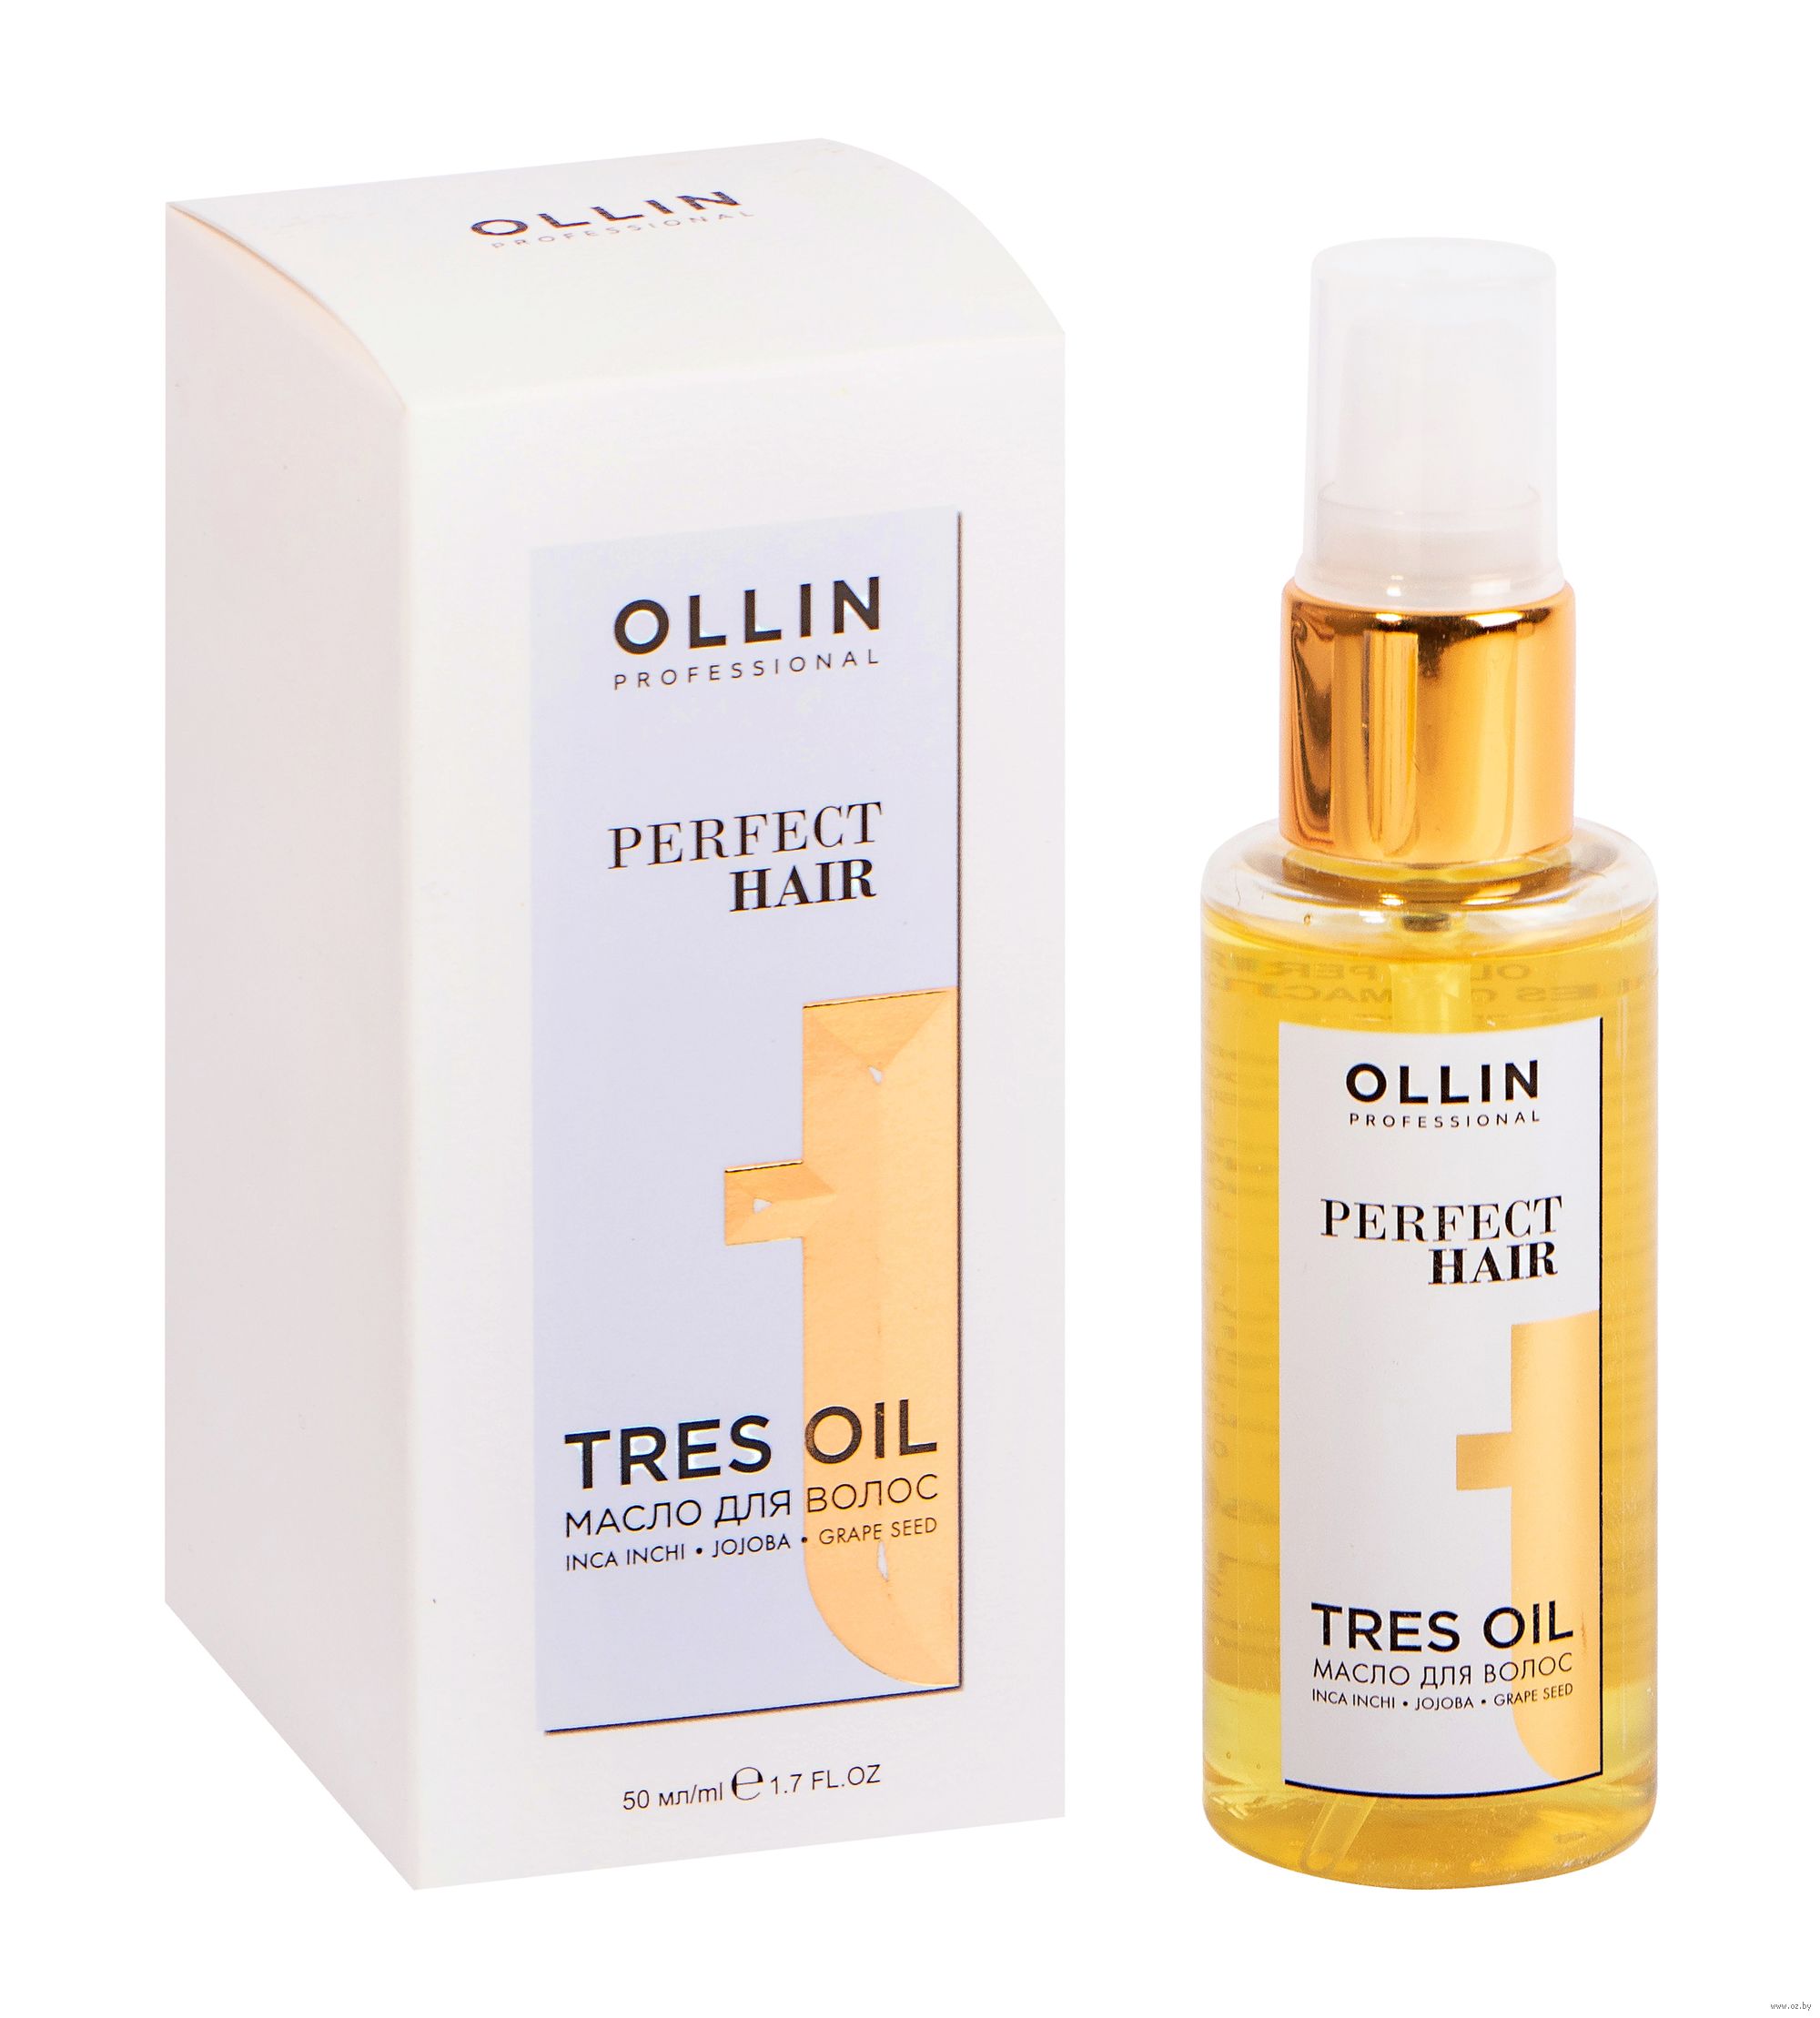 Ollin tres Oil. Масло инчи для волос. Перфект для волос. Масло для волос Ollin perfect hair.